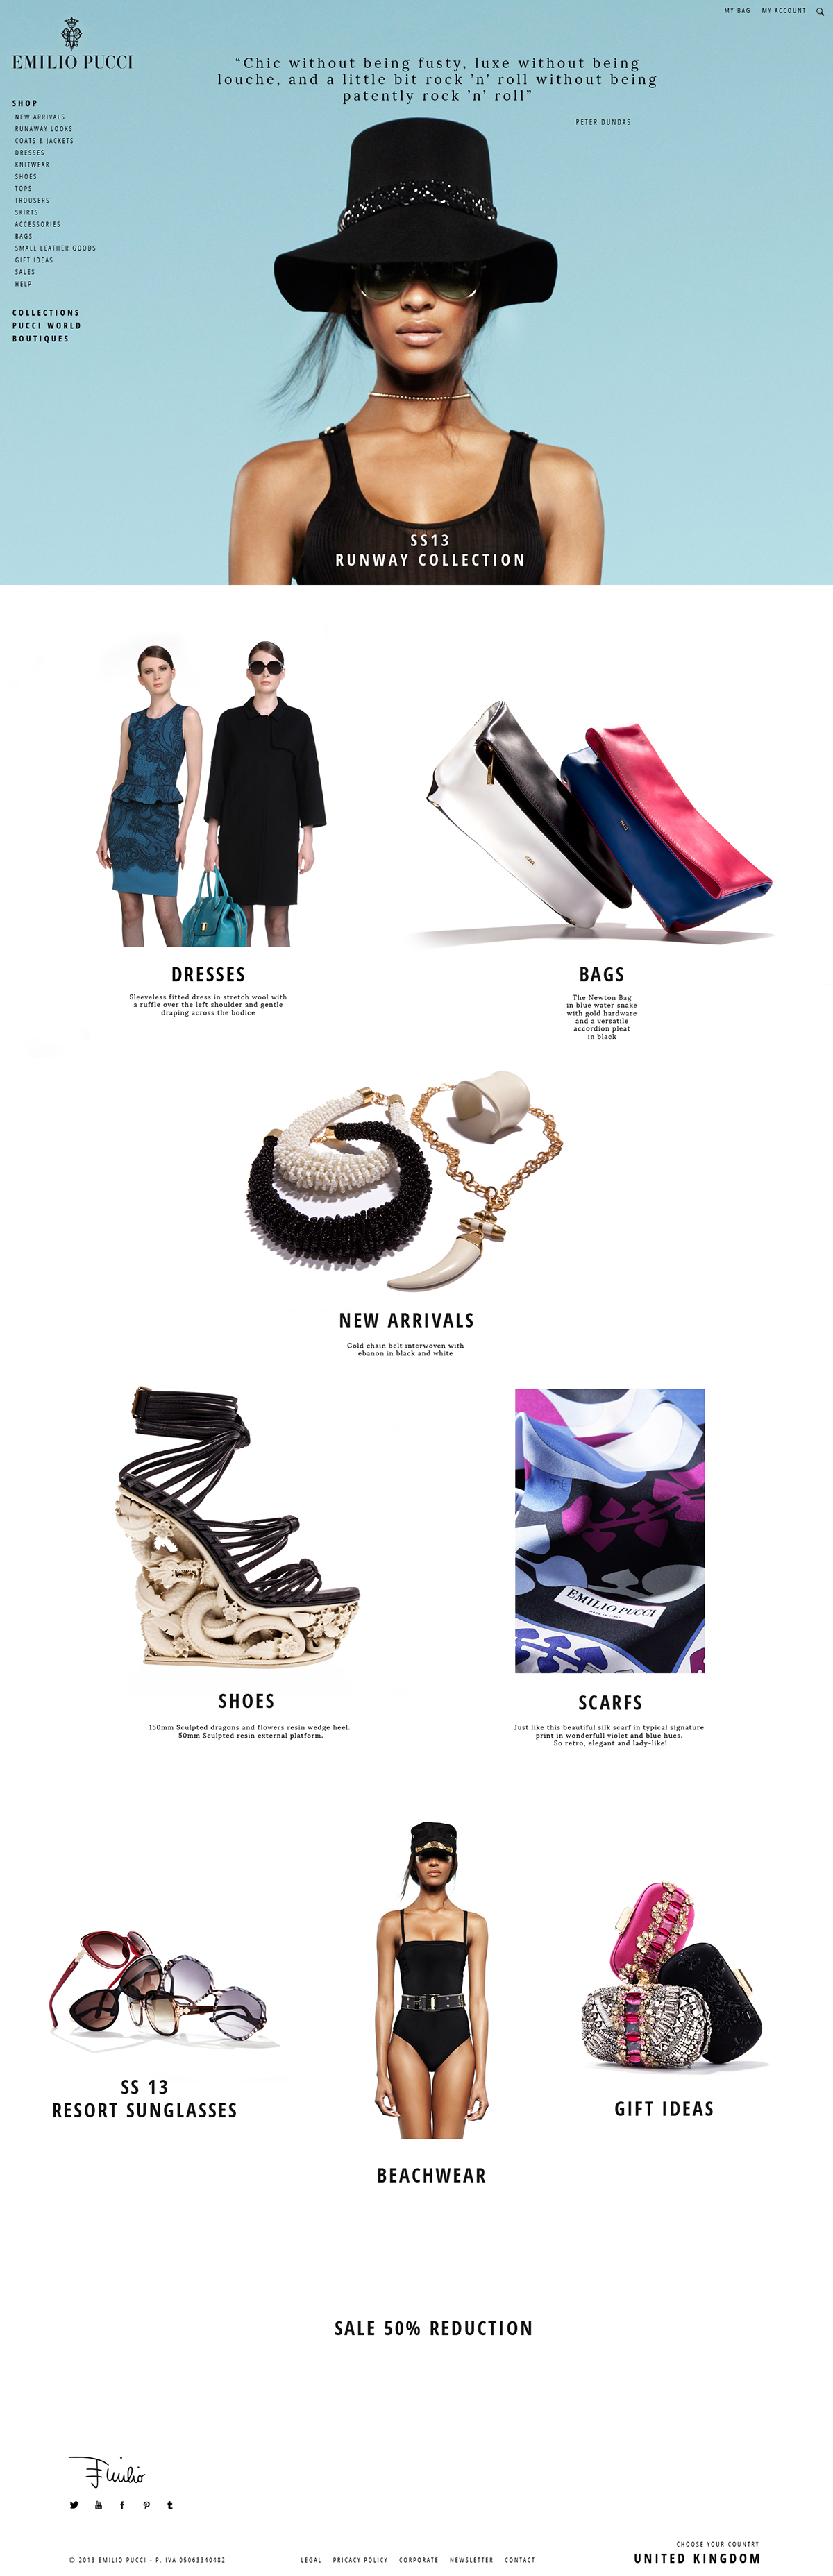 e-commerce Fashion  Pucci Emilio Pucci Web Design  UI